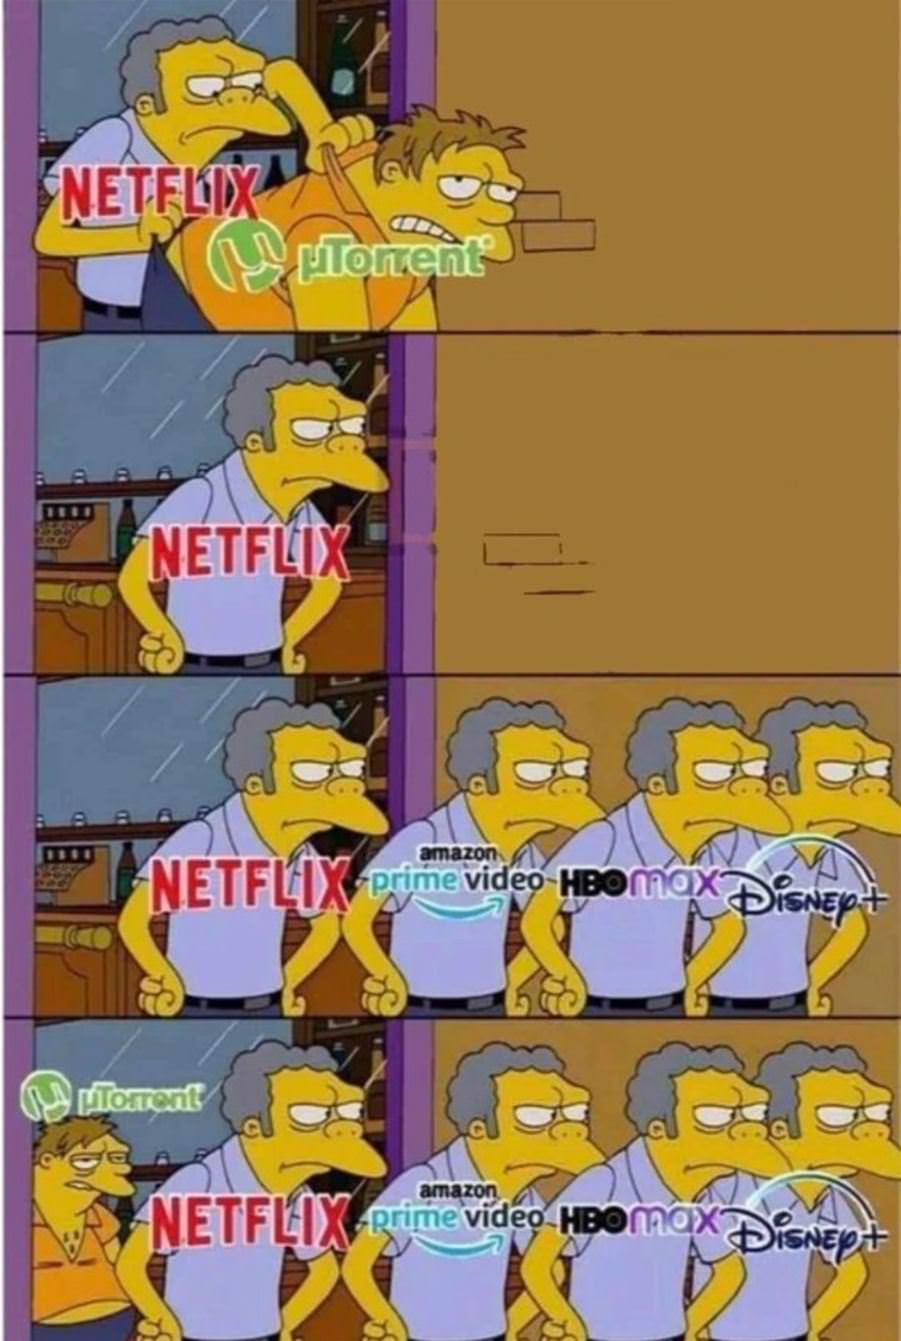 Good Job Netflix